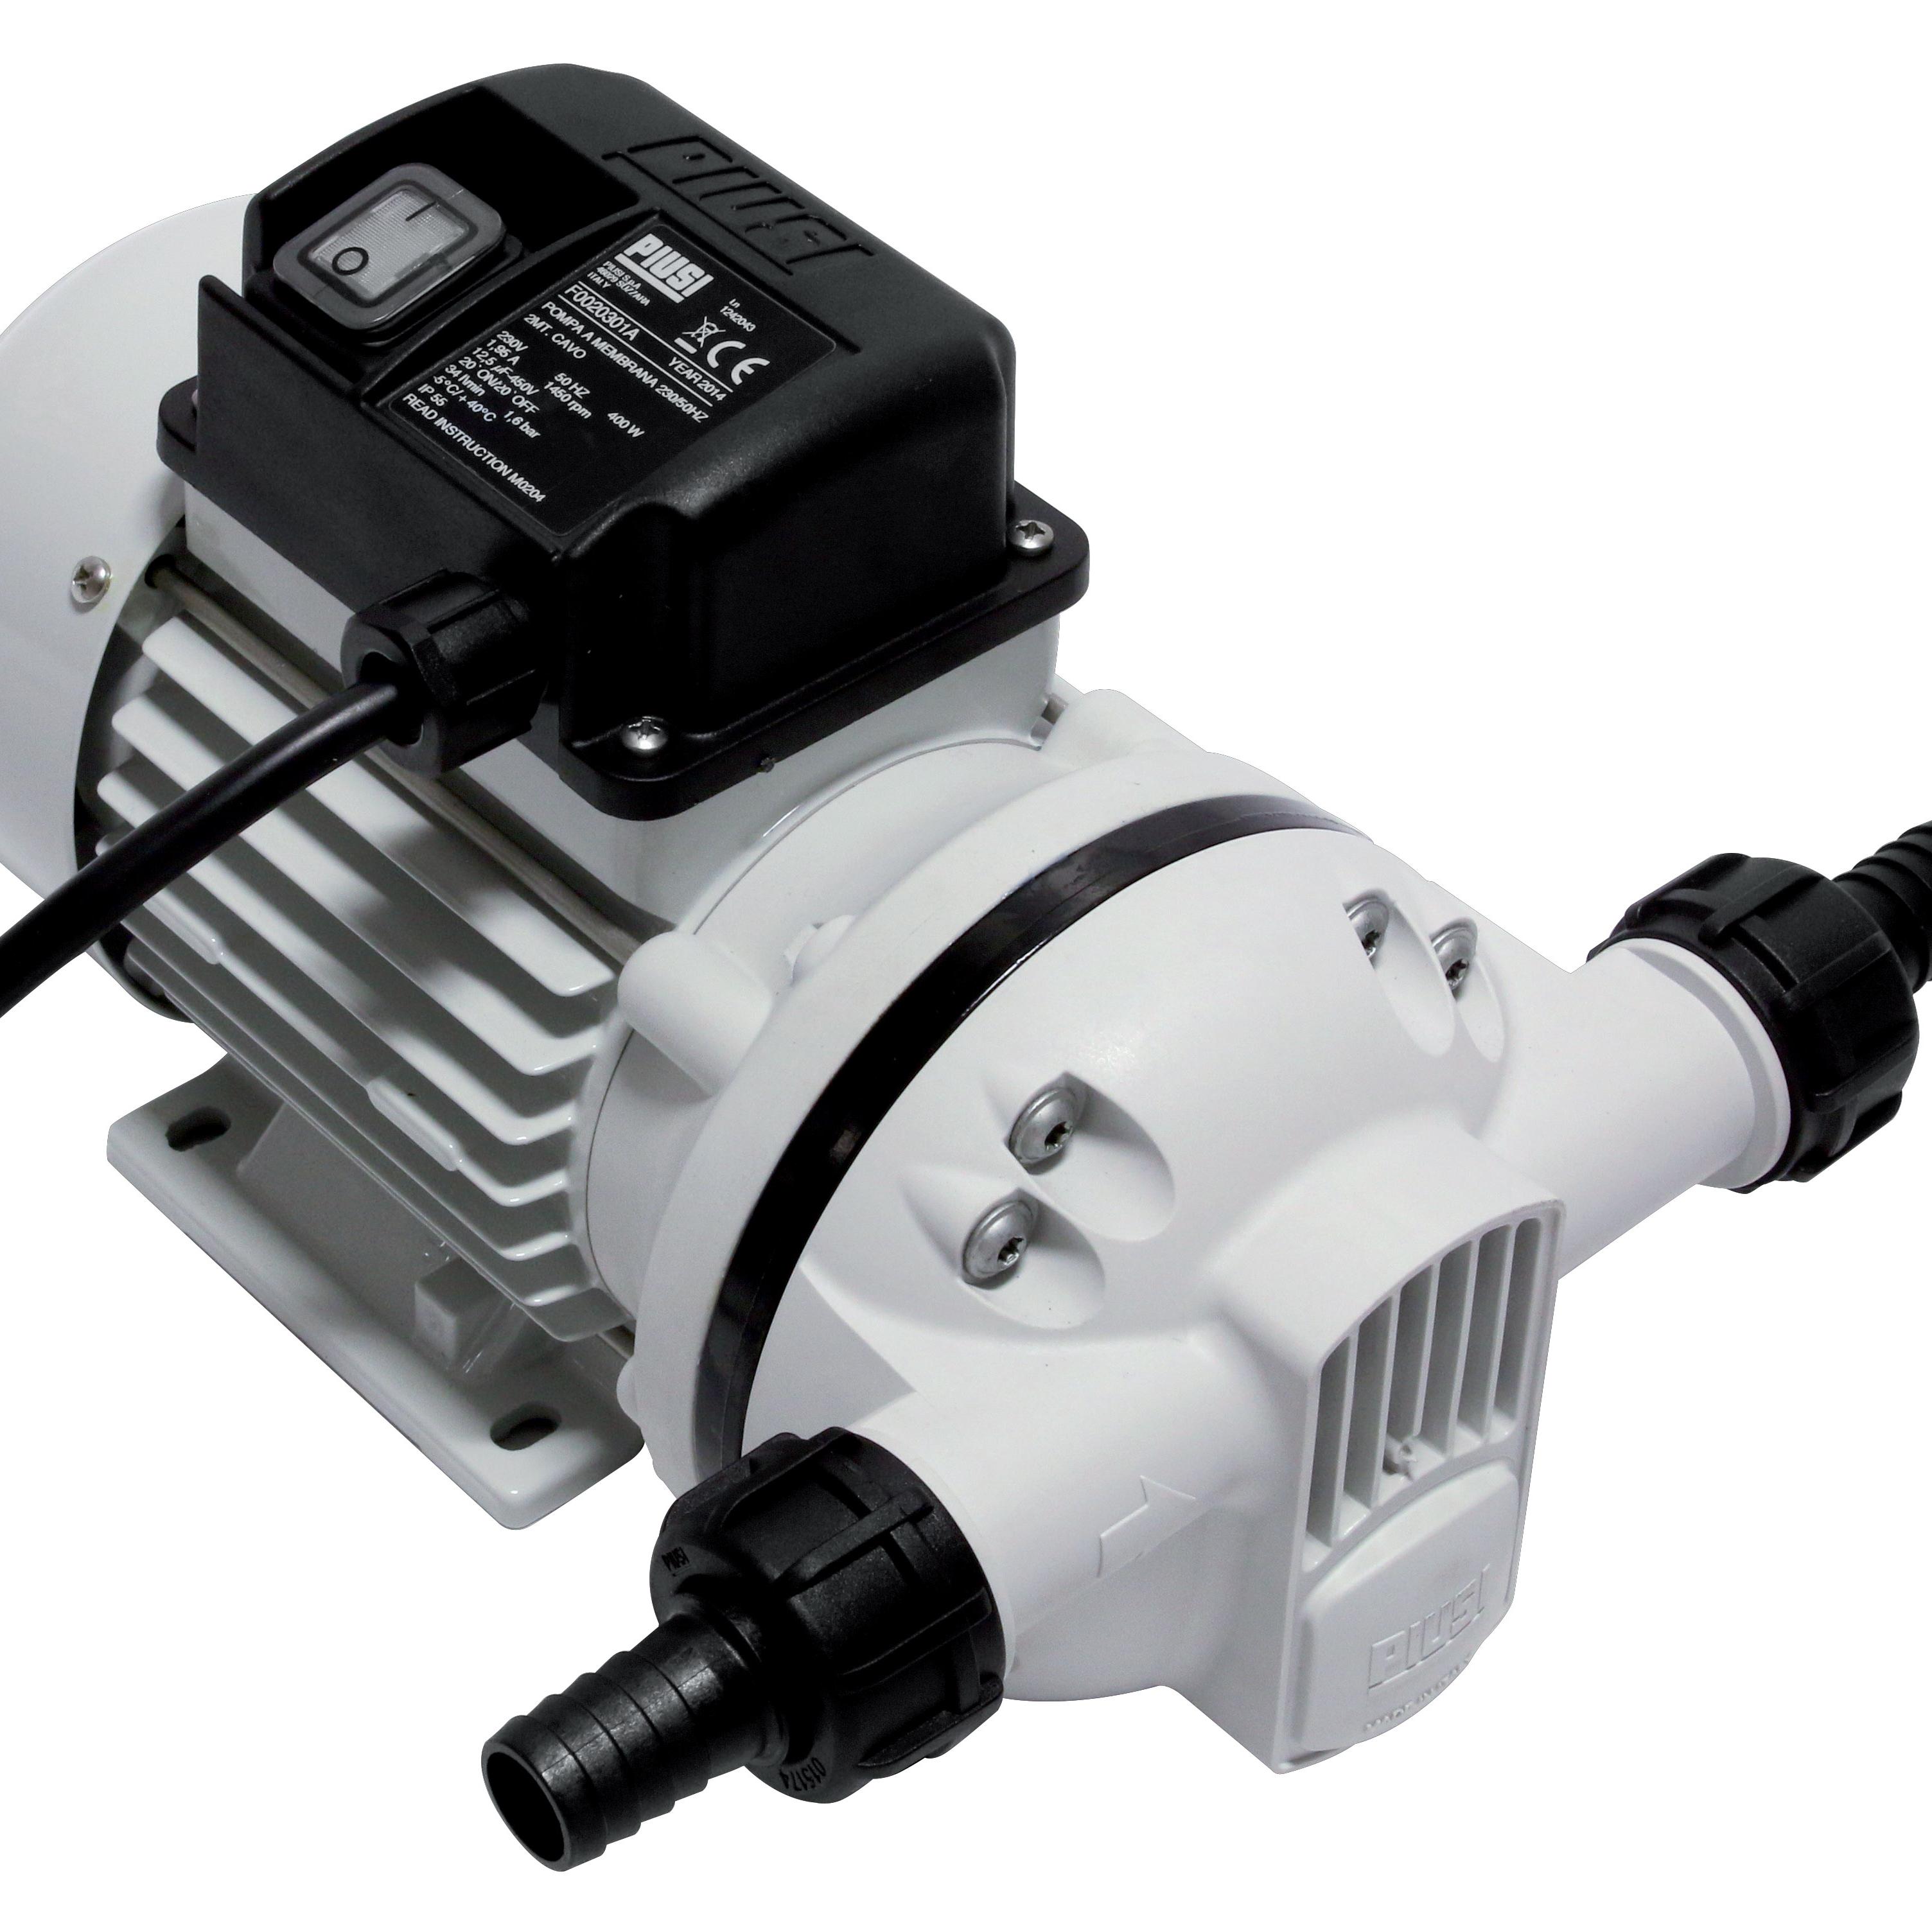 KABI Dieselpumpe 230V AC - KABI el-pumper for diesel og fyringsolie. Løs